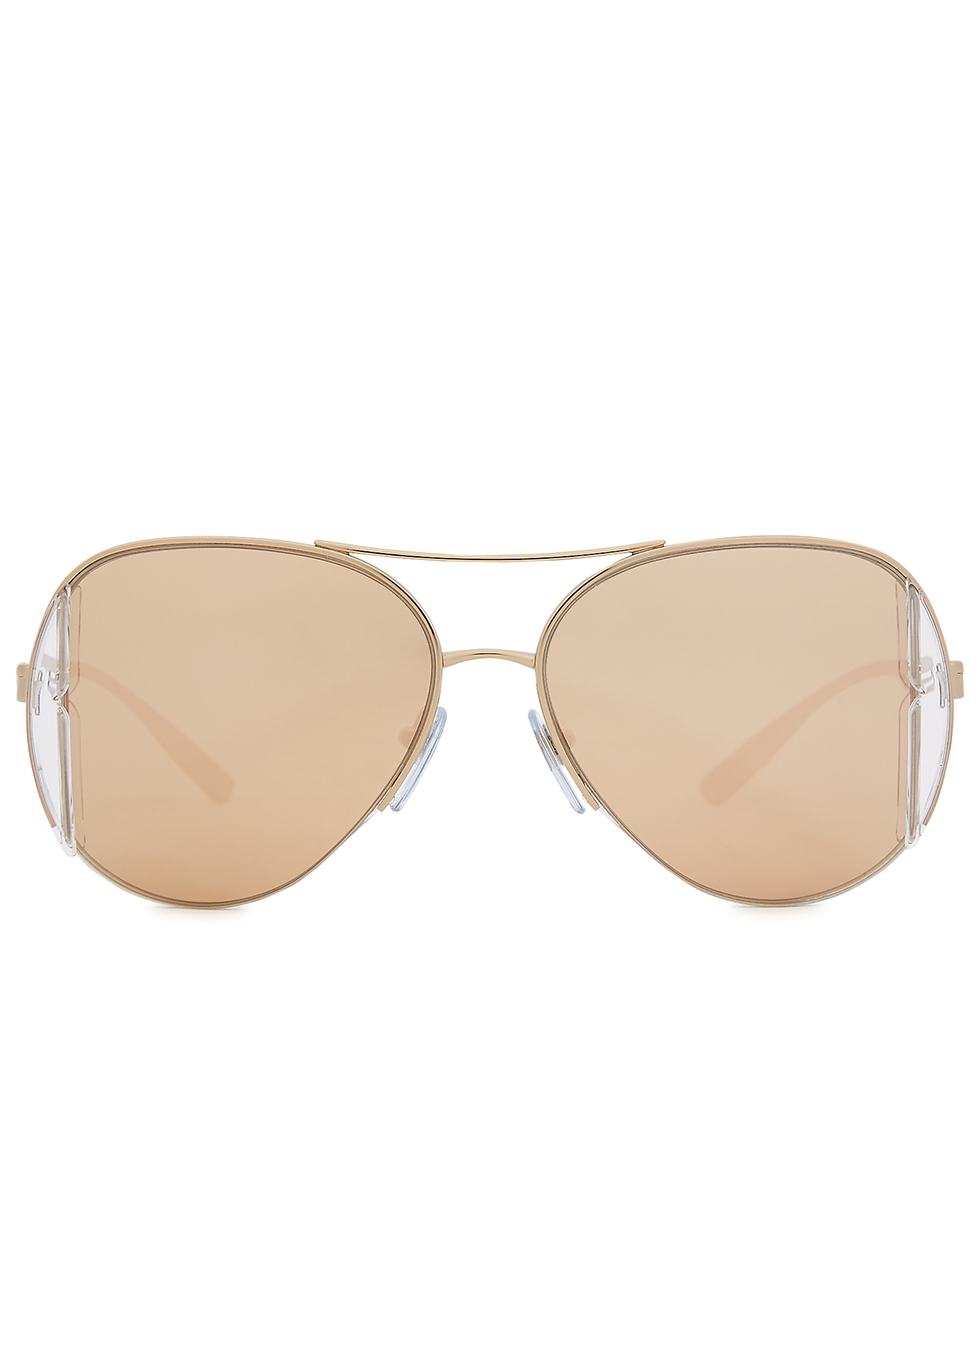 bvlgari gold mirror sunglasses